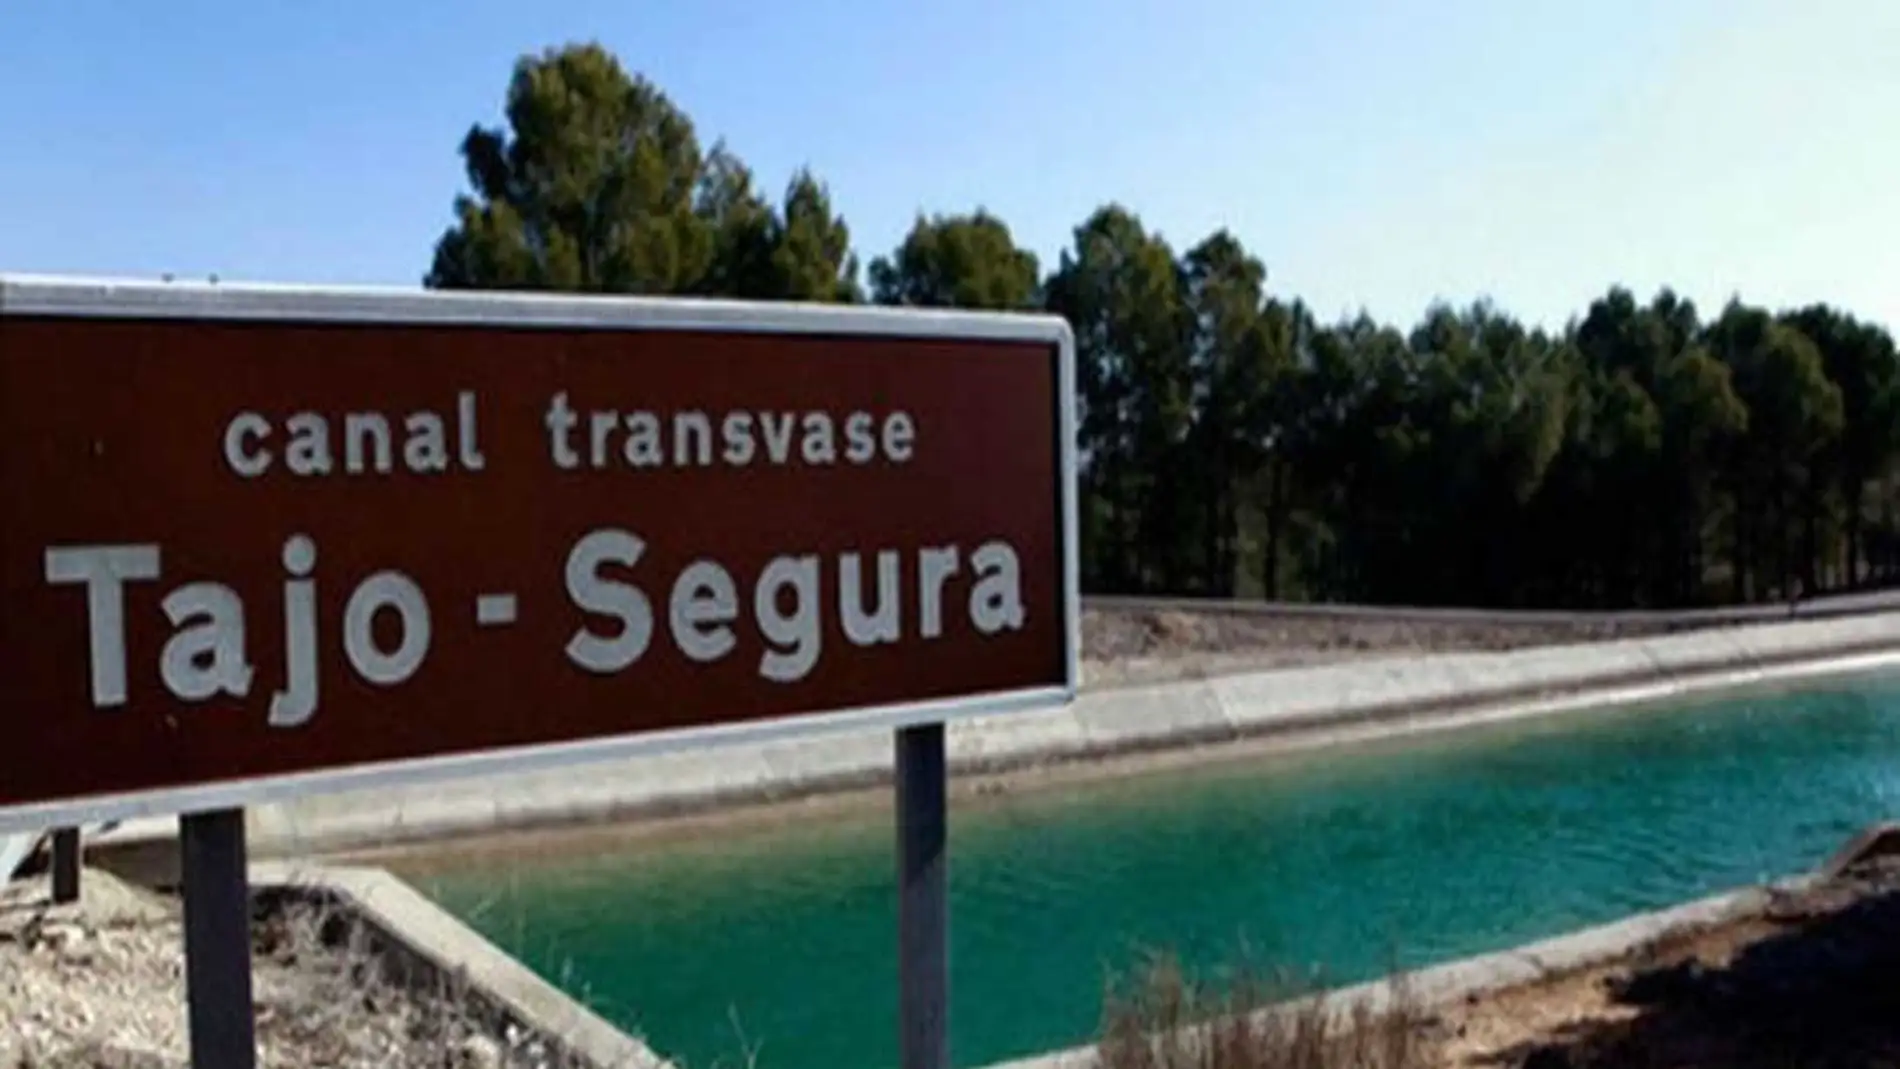 Uno de los canales del trasvase Tajo-Segura.